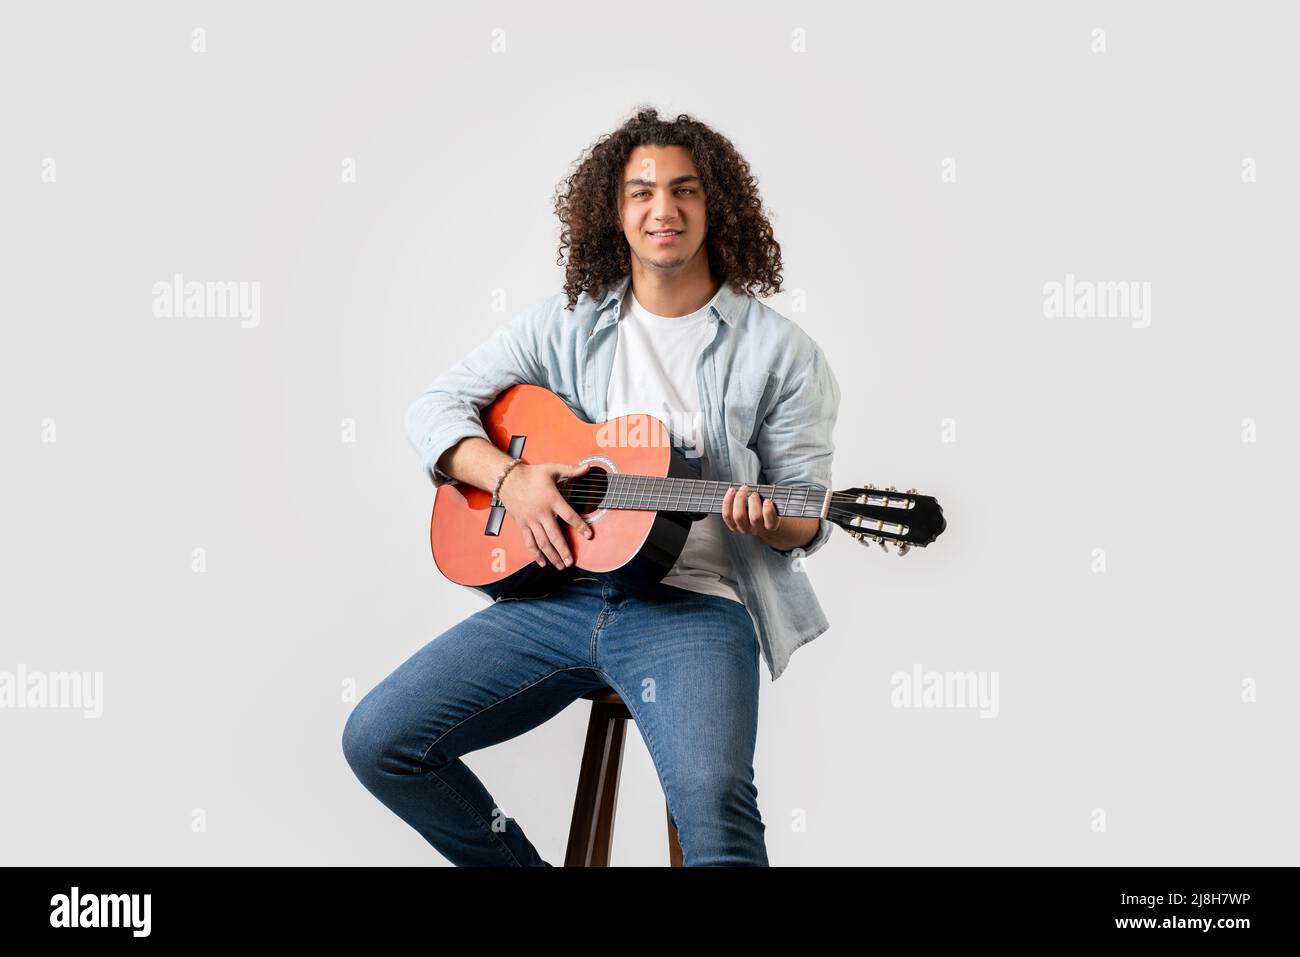 Giovane uomo con capelli ricci, con chitarra solista acustica, isolato su sfondo bianco. Foto di alta qualità Foto Stock